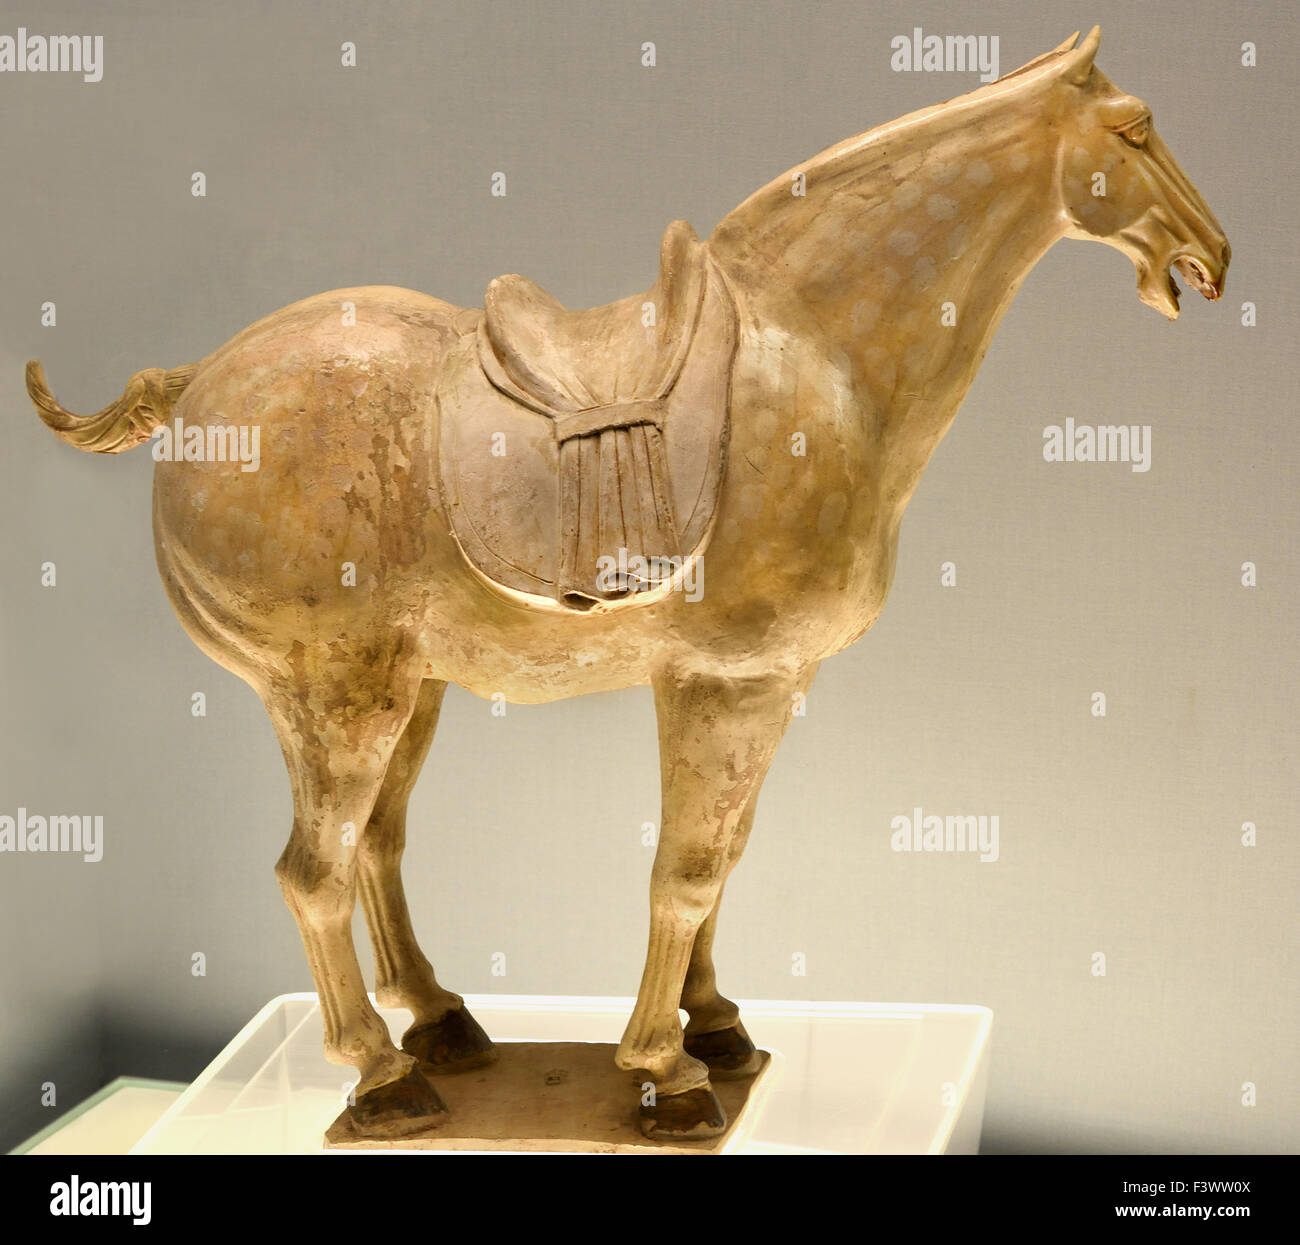 La poterie vernissée polychrome 618 - 907 Chevaux Tang Dynastie Han AD ( Musée de Shanghai de l'art chinois ancien ) Chine Banque D'Images